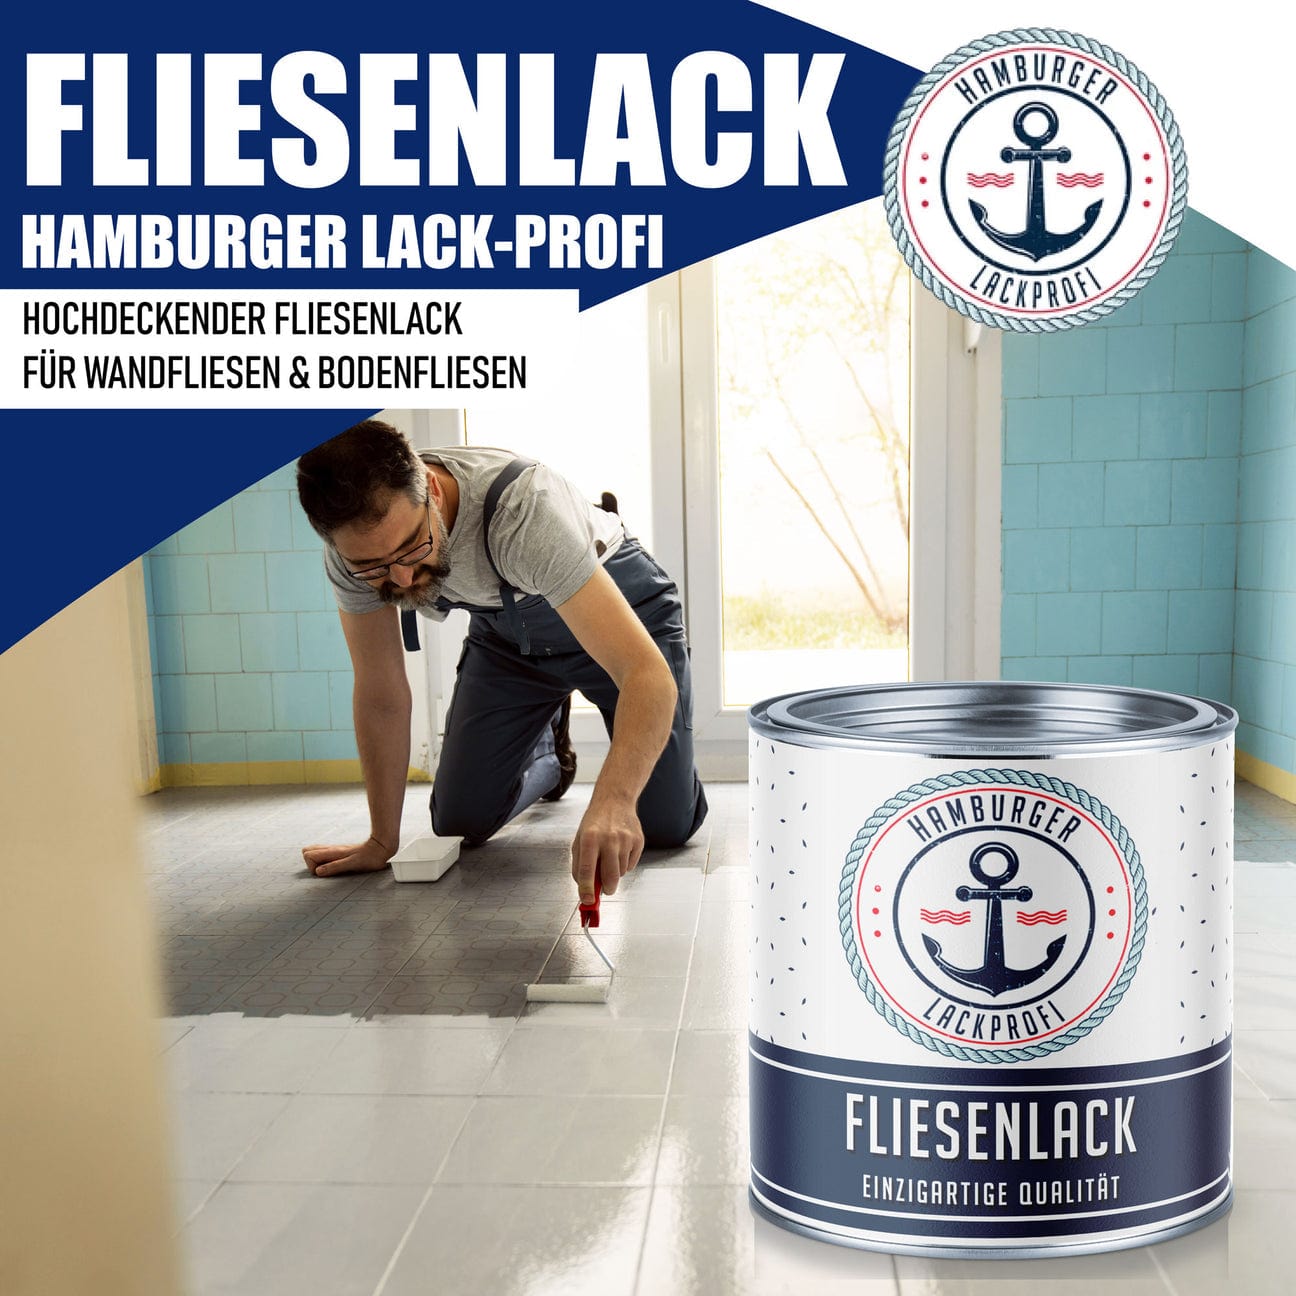 Hamburger Lack-Profi Hamburger Lack-Profi Fliesenlack Schokoladenbraun RAL 8017 - hochdeckende Fliesenfarbe Braun